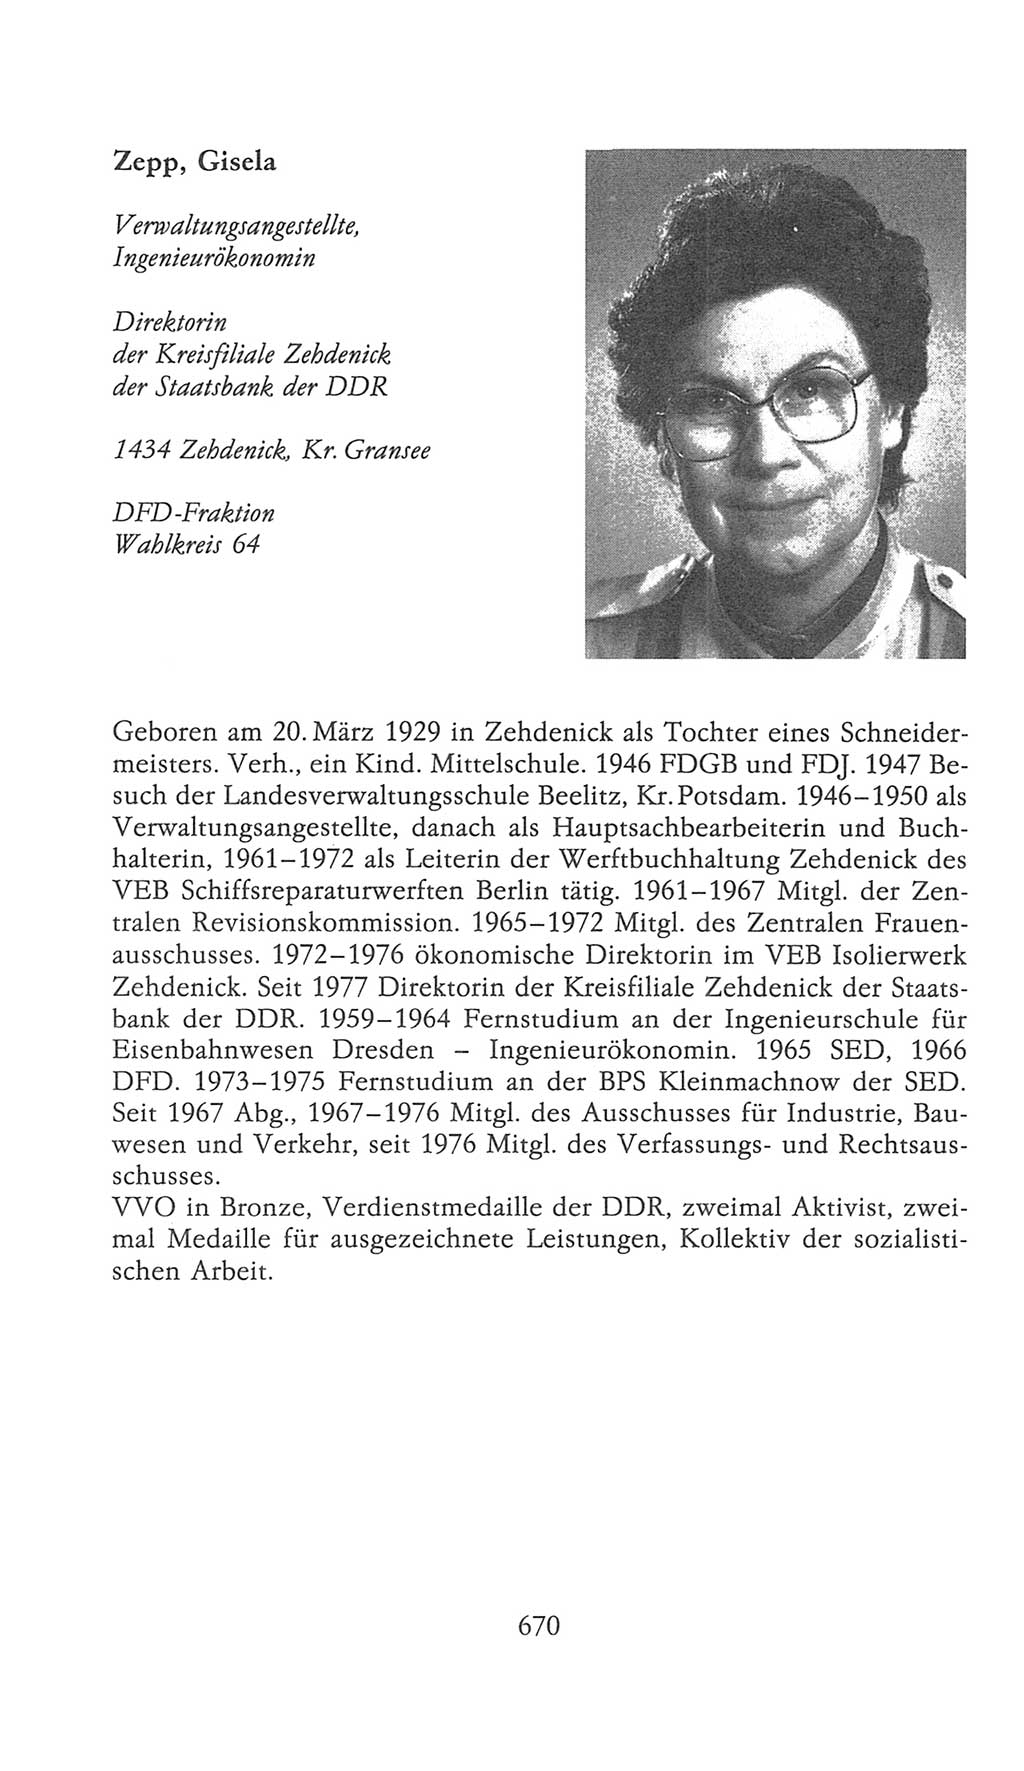 Volkskammer (VK) der Deutschen Demokratischen Republik (DDR), 9. Wahlperiode 1986-1990, Seite 670 (VK. DDR 9. WP. 1986-1990, S. 670)